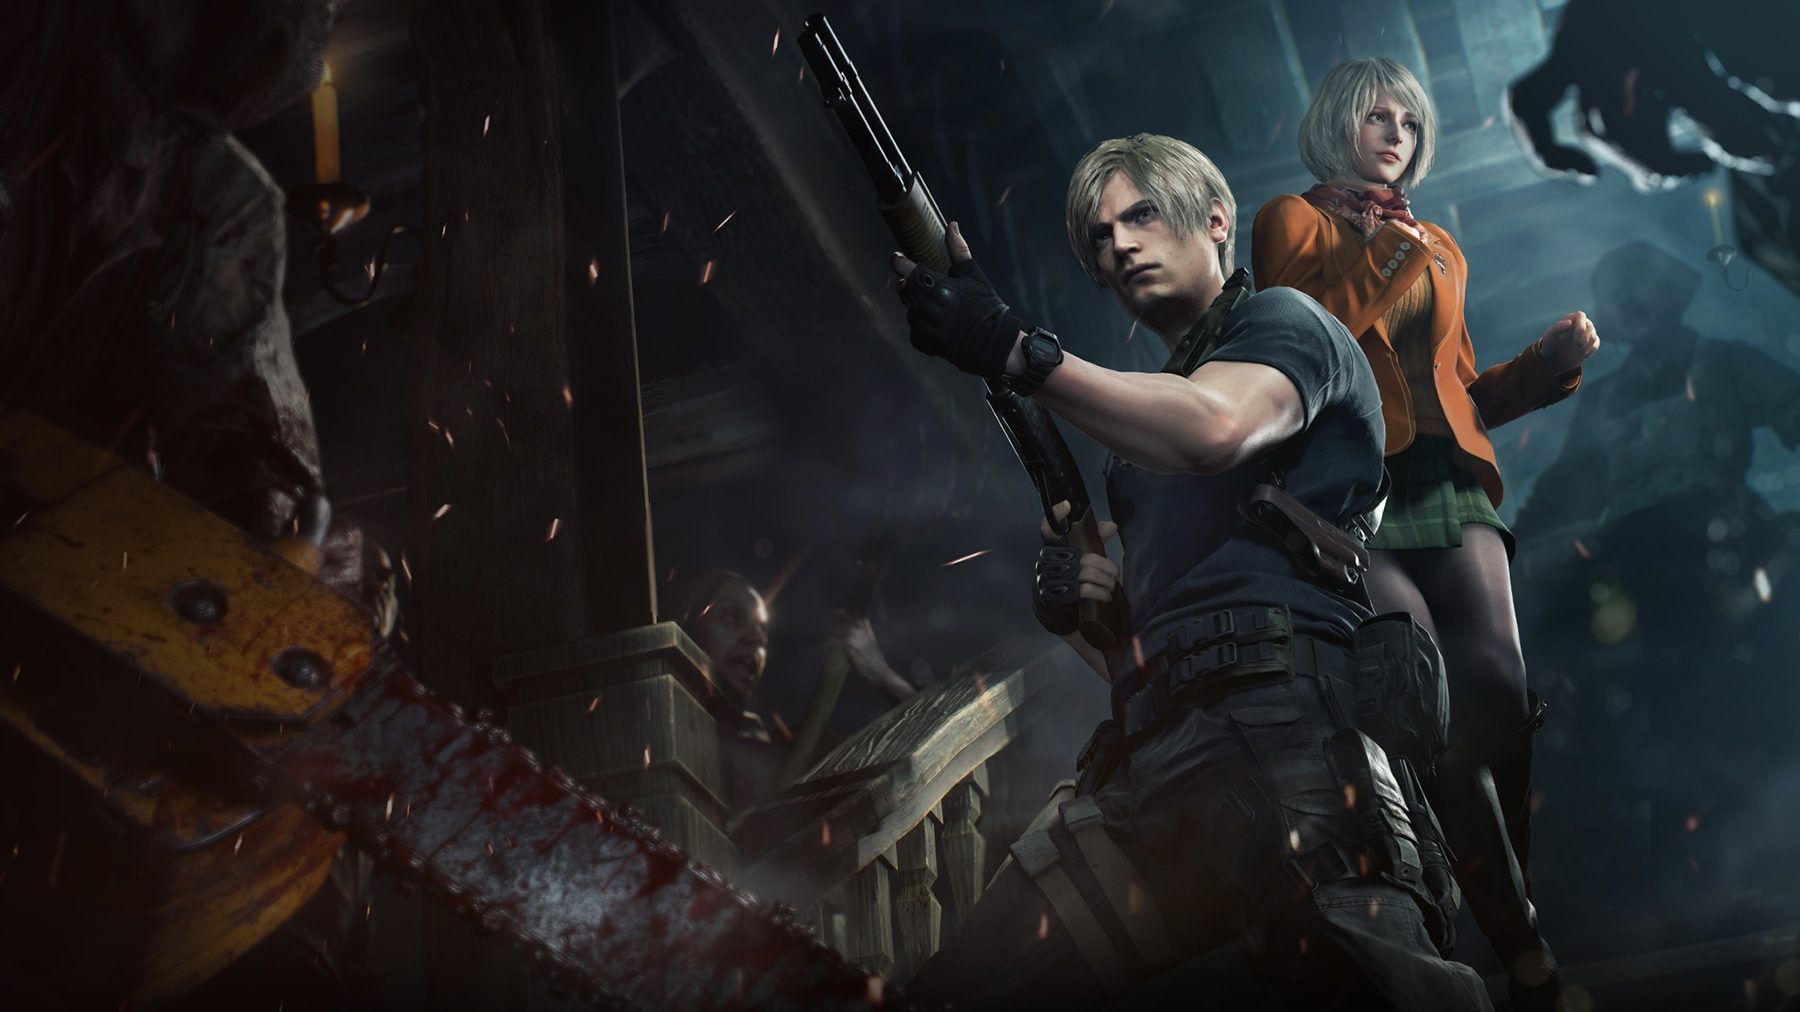 Wallpaper : resident evil 4 remake, Resident Evil, ada wong